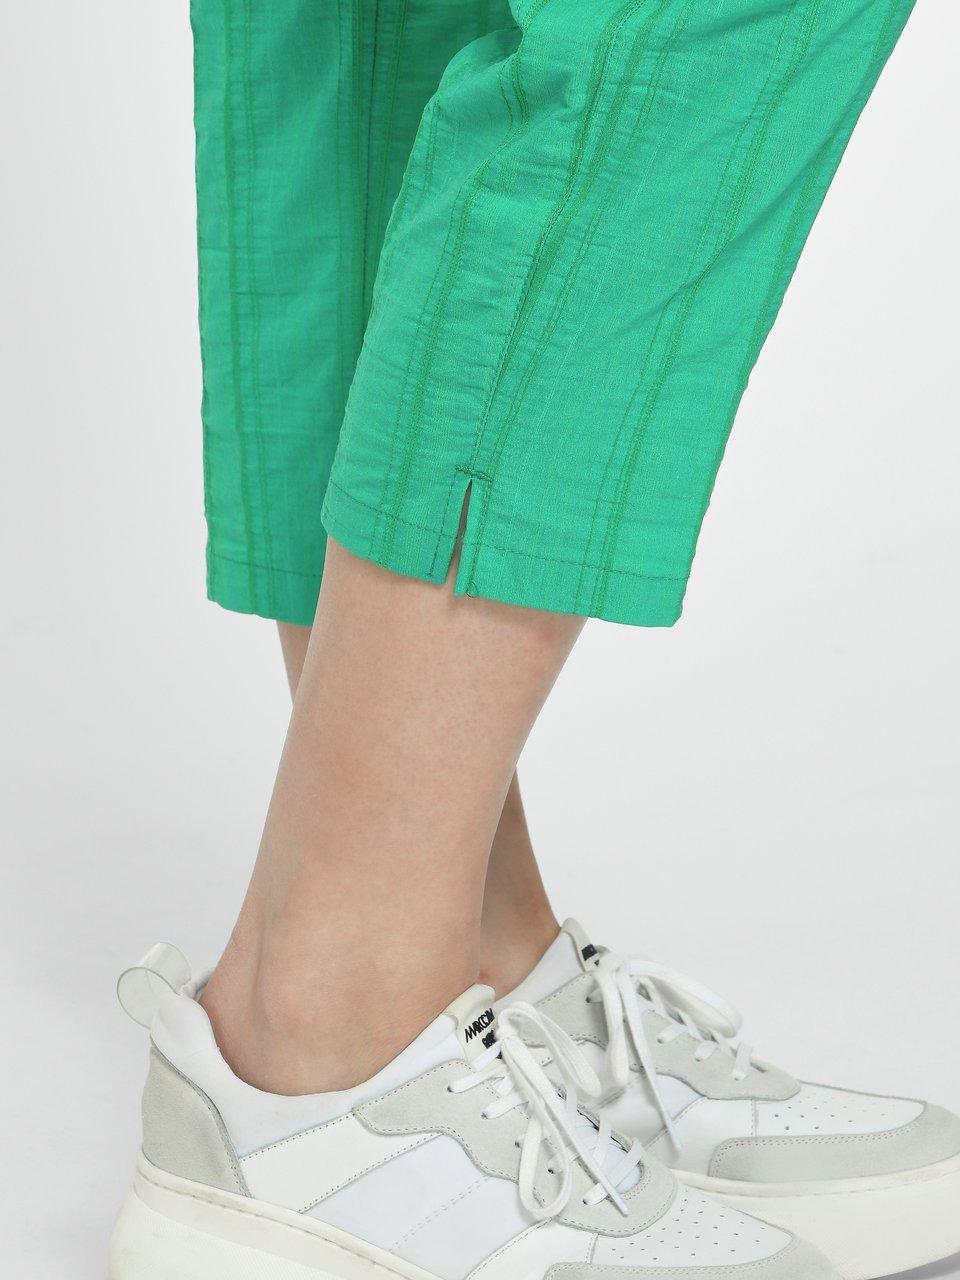 Bea KjBrand Modell Smaragd & 7/8-Hose Go - - Wash